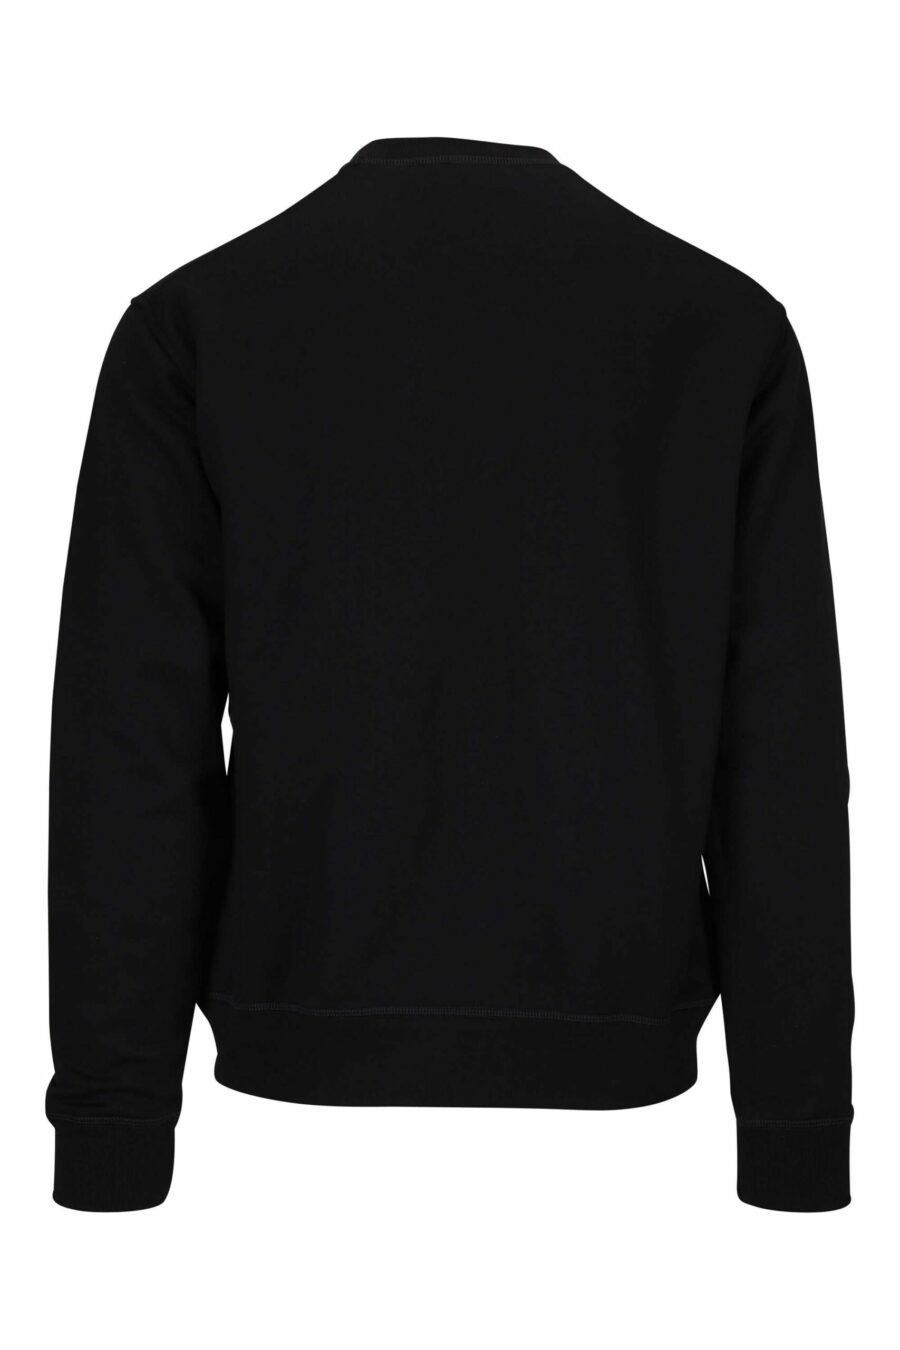 Schwarzes Sweatshirt mit "icon splash" Maxilogo - 8054148403386 1 skaliert